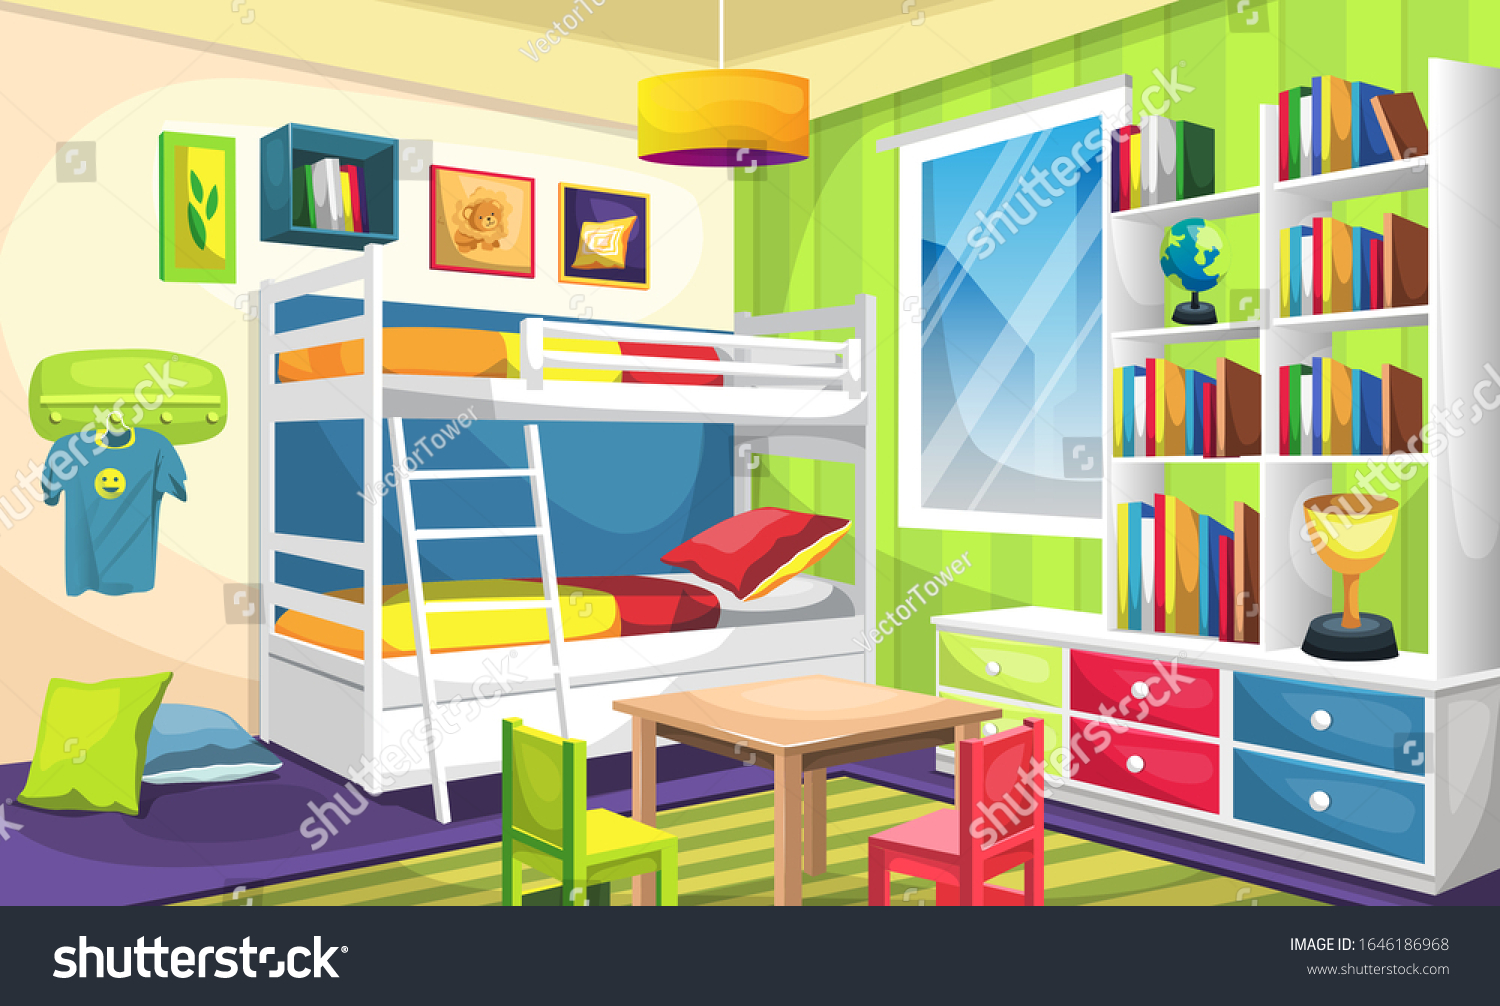 Рисунок комнаты детской с двухъярусной кроватью